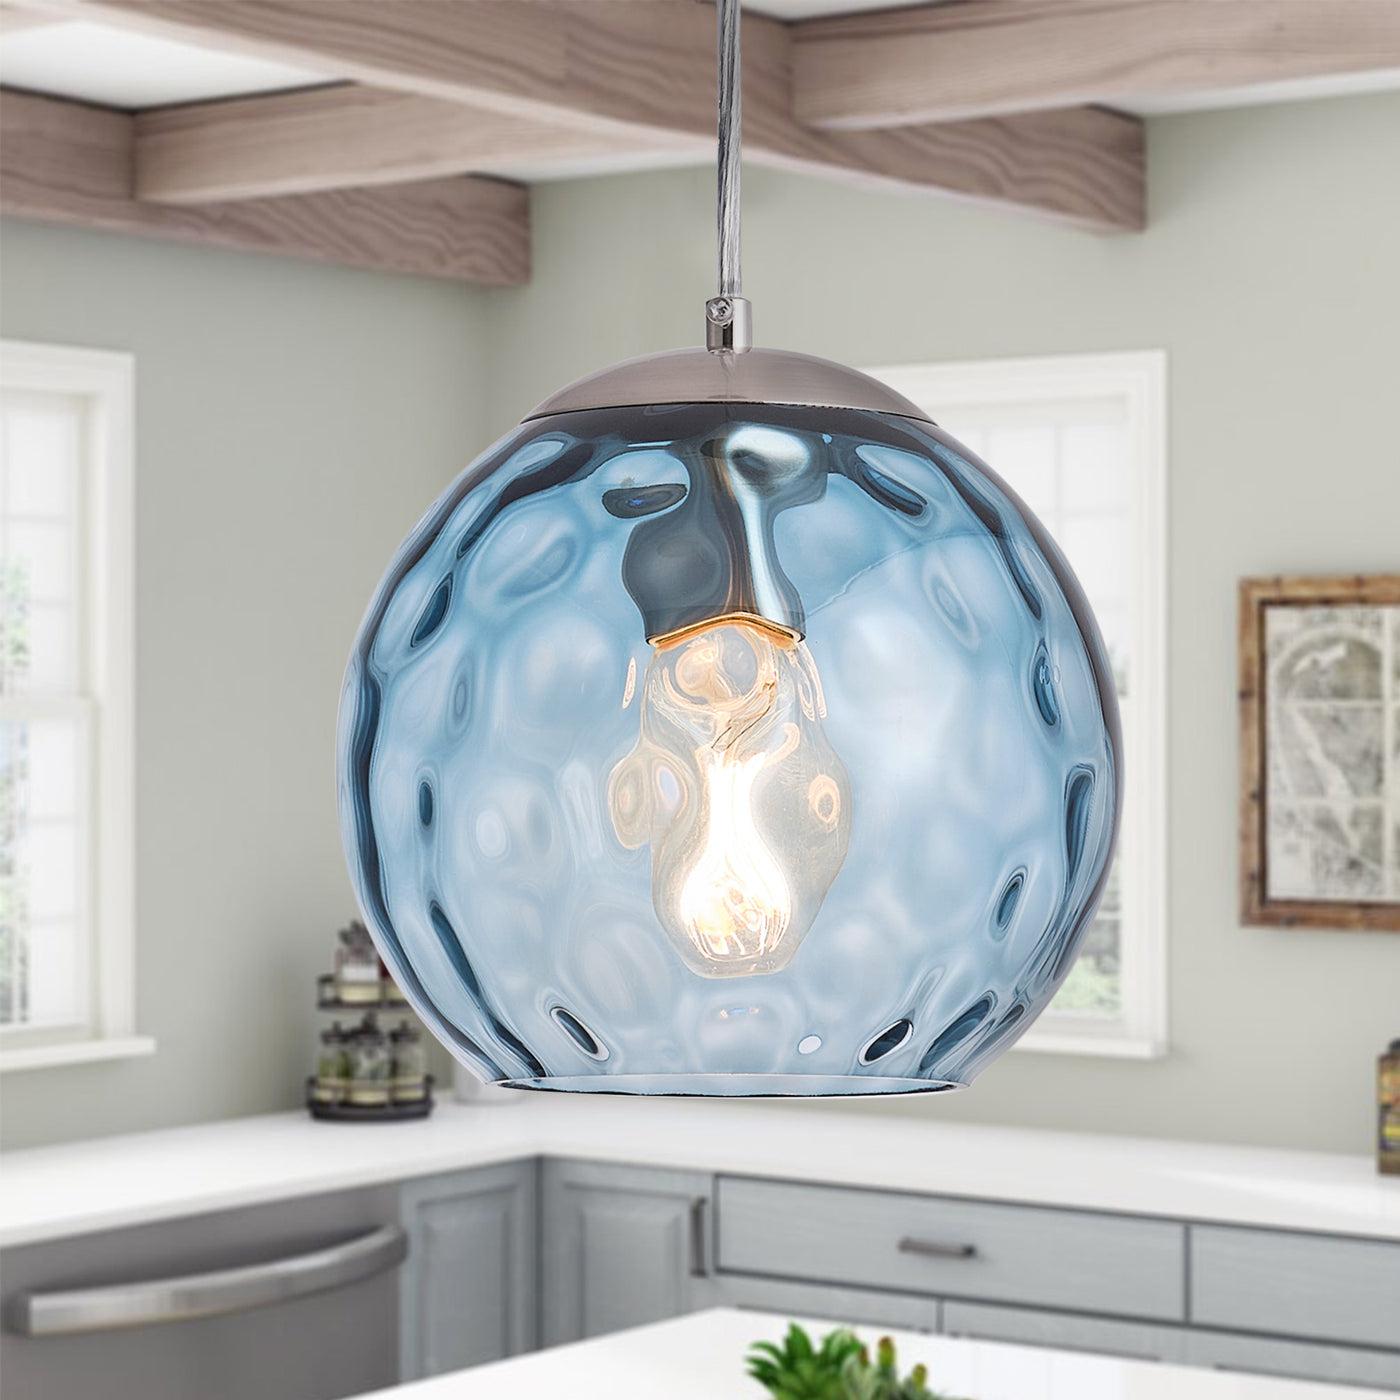 1-Light Glass Ball Shade with Polka Dot Pendant Lighting